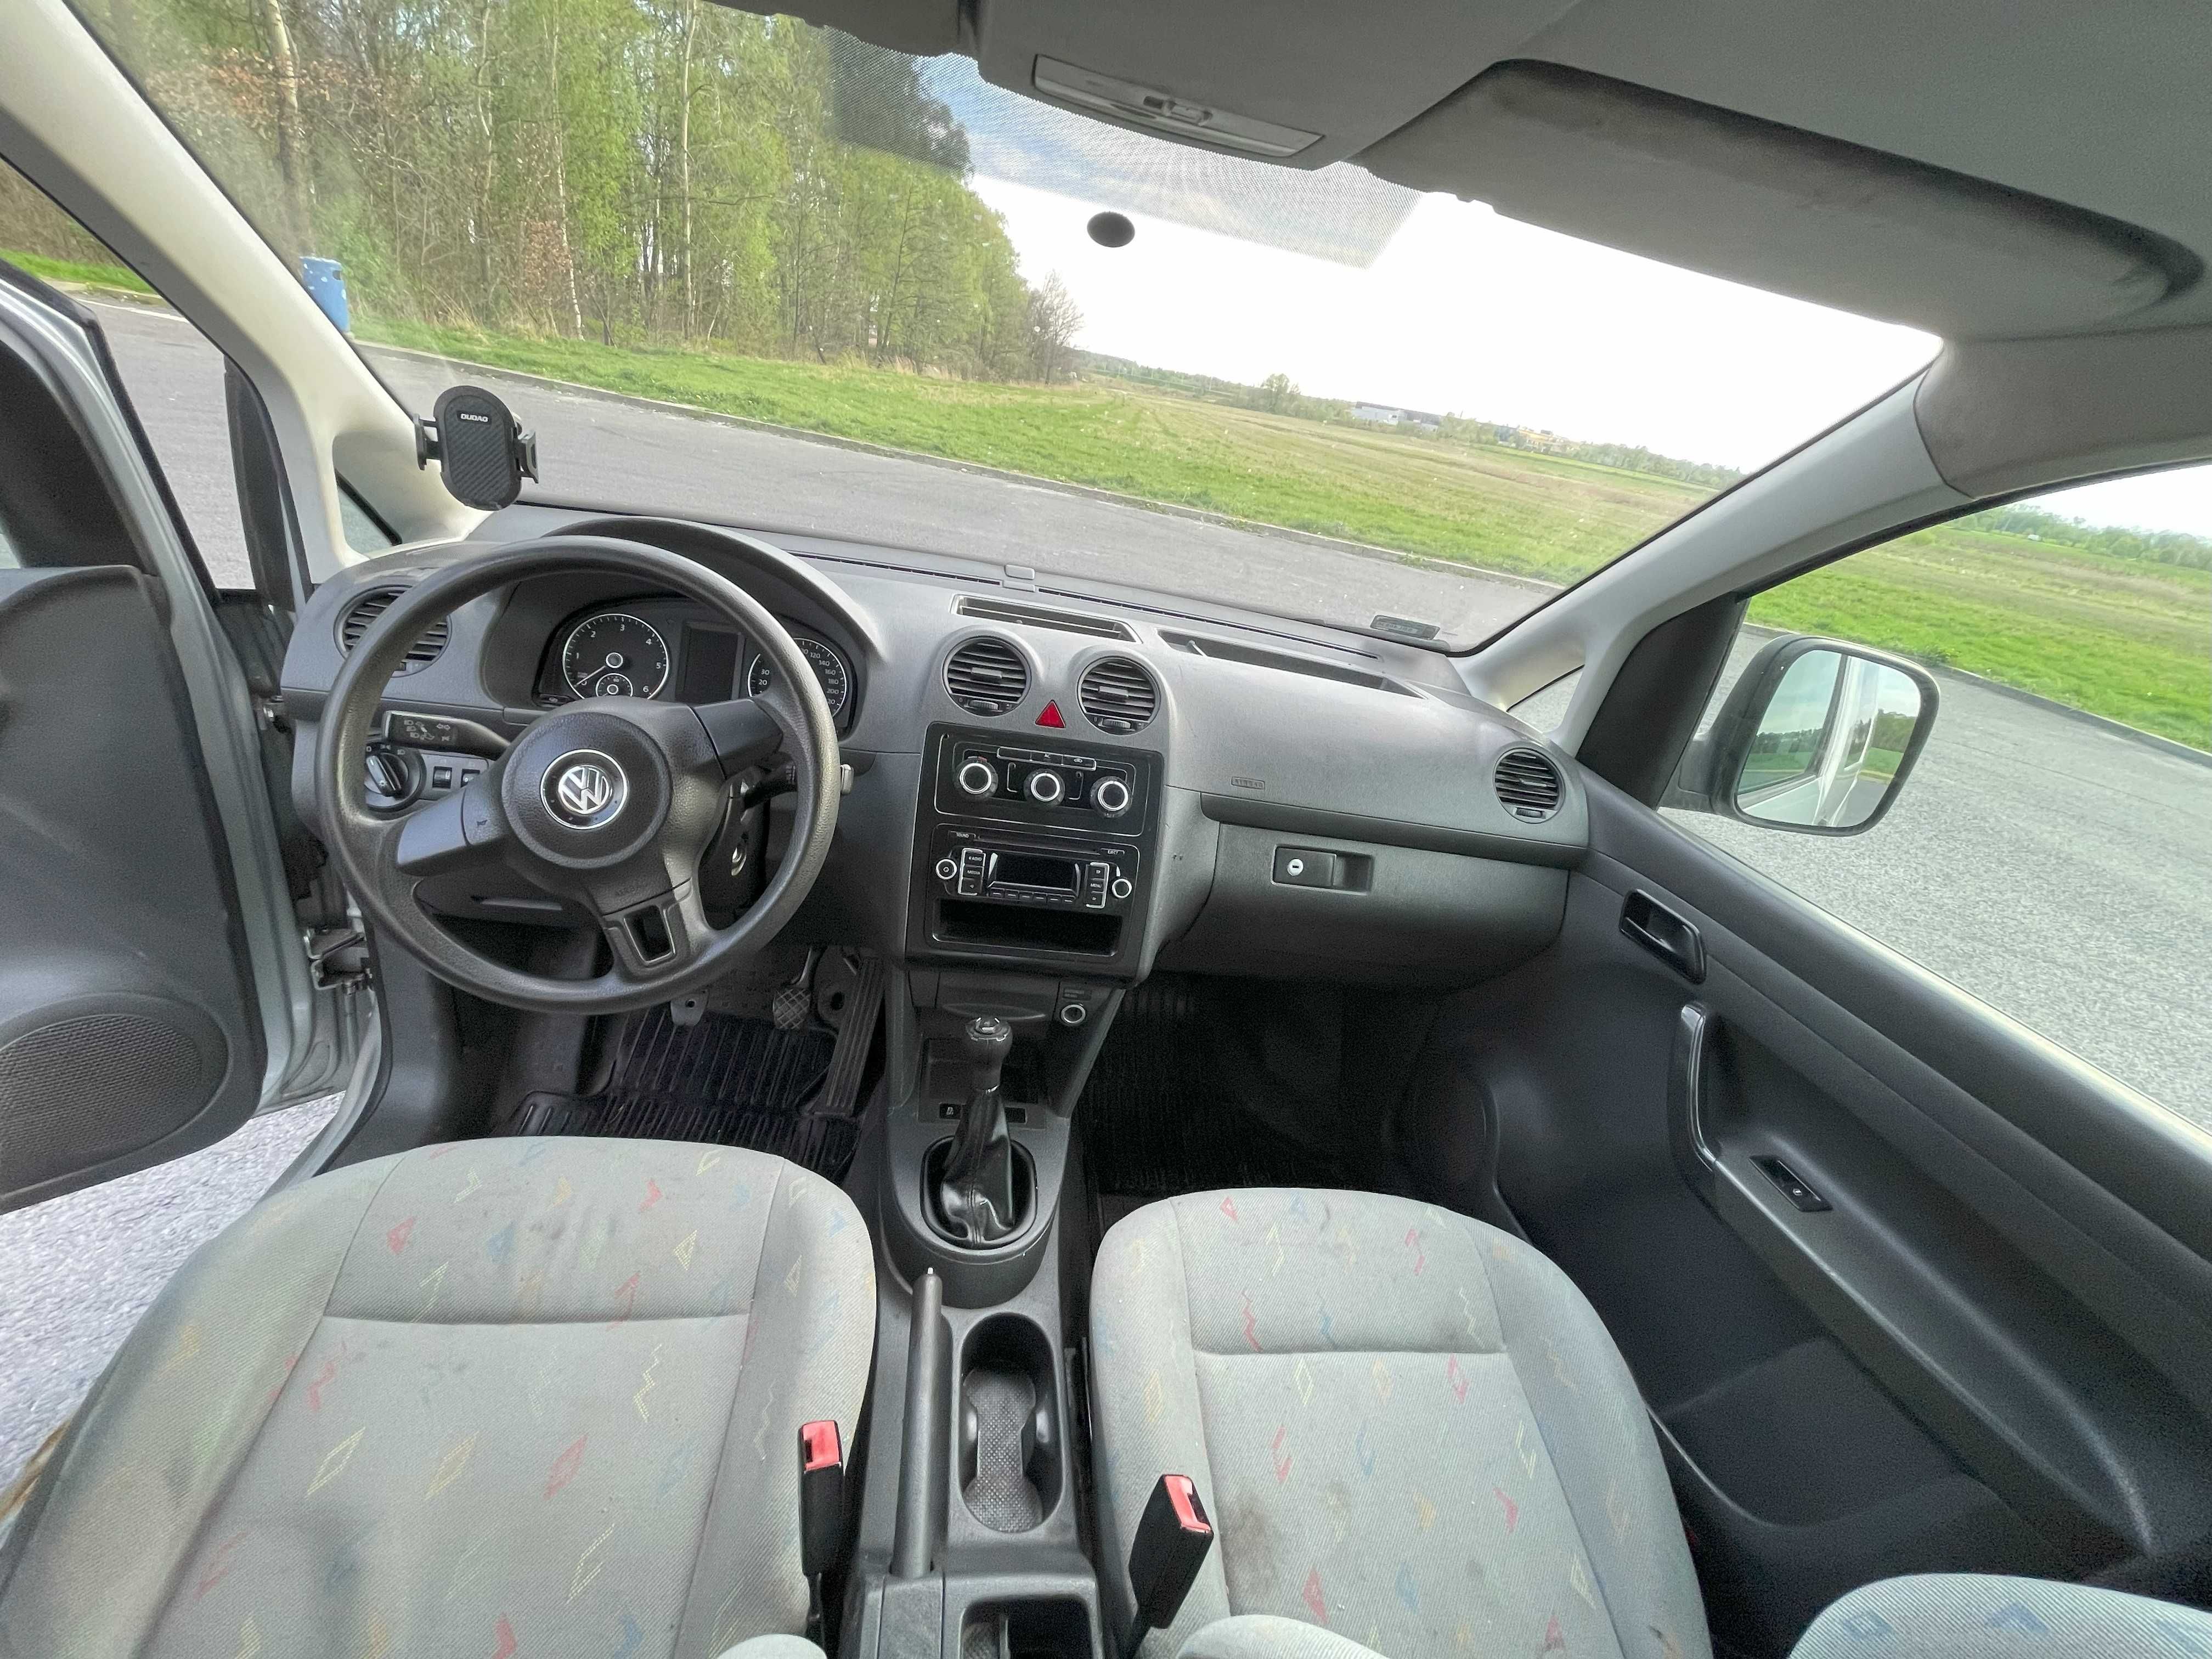 VW Caddy 1.6 TDI hak klimatyzacja + opony zimowe (roboczy dostawczy)